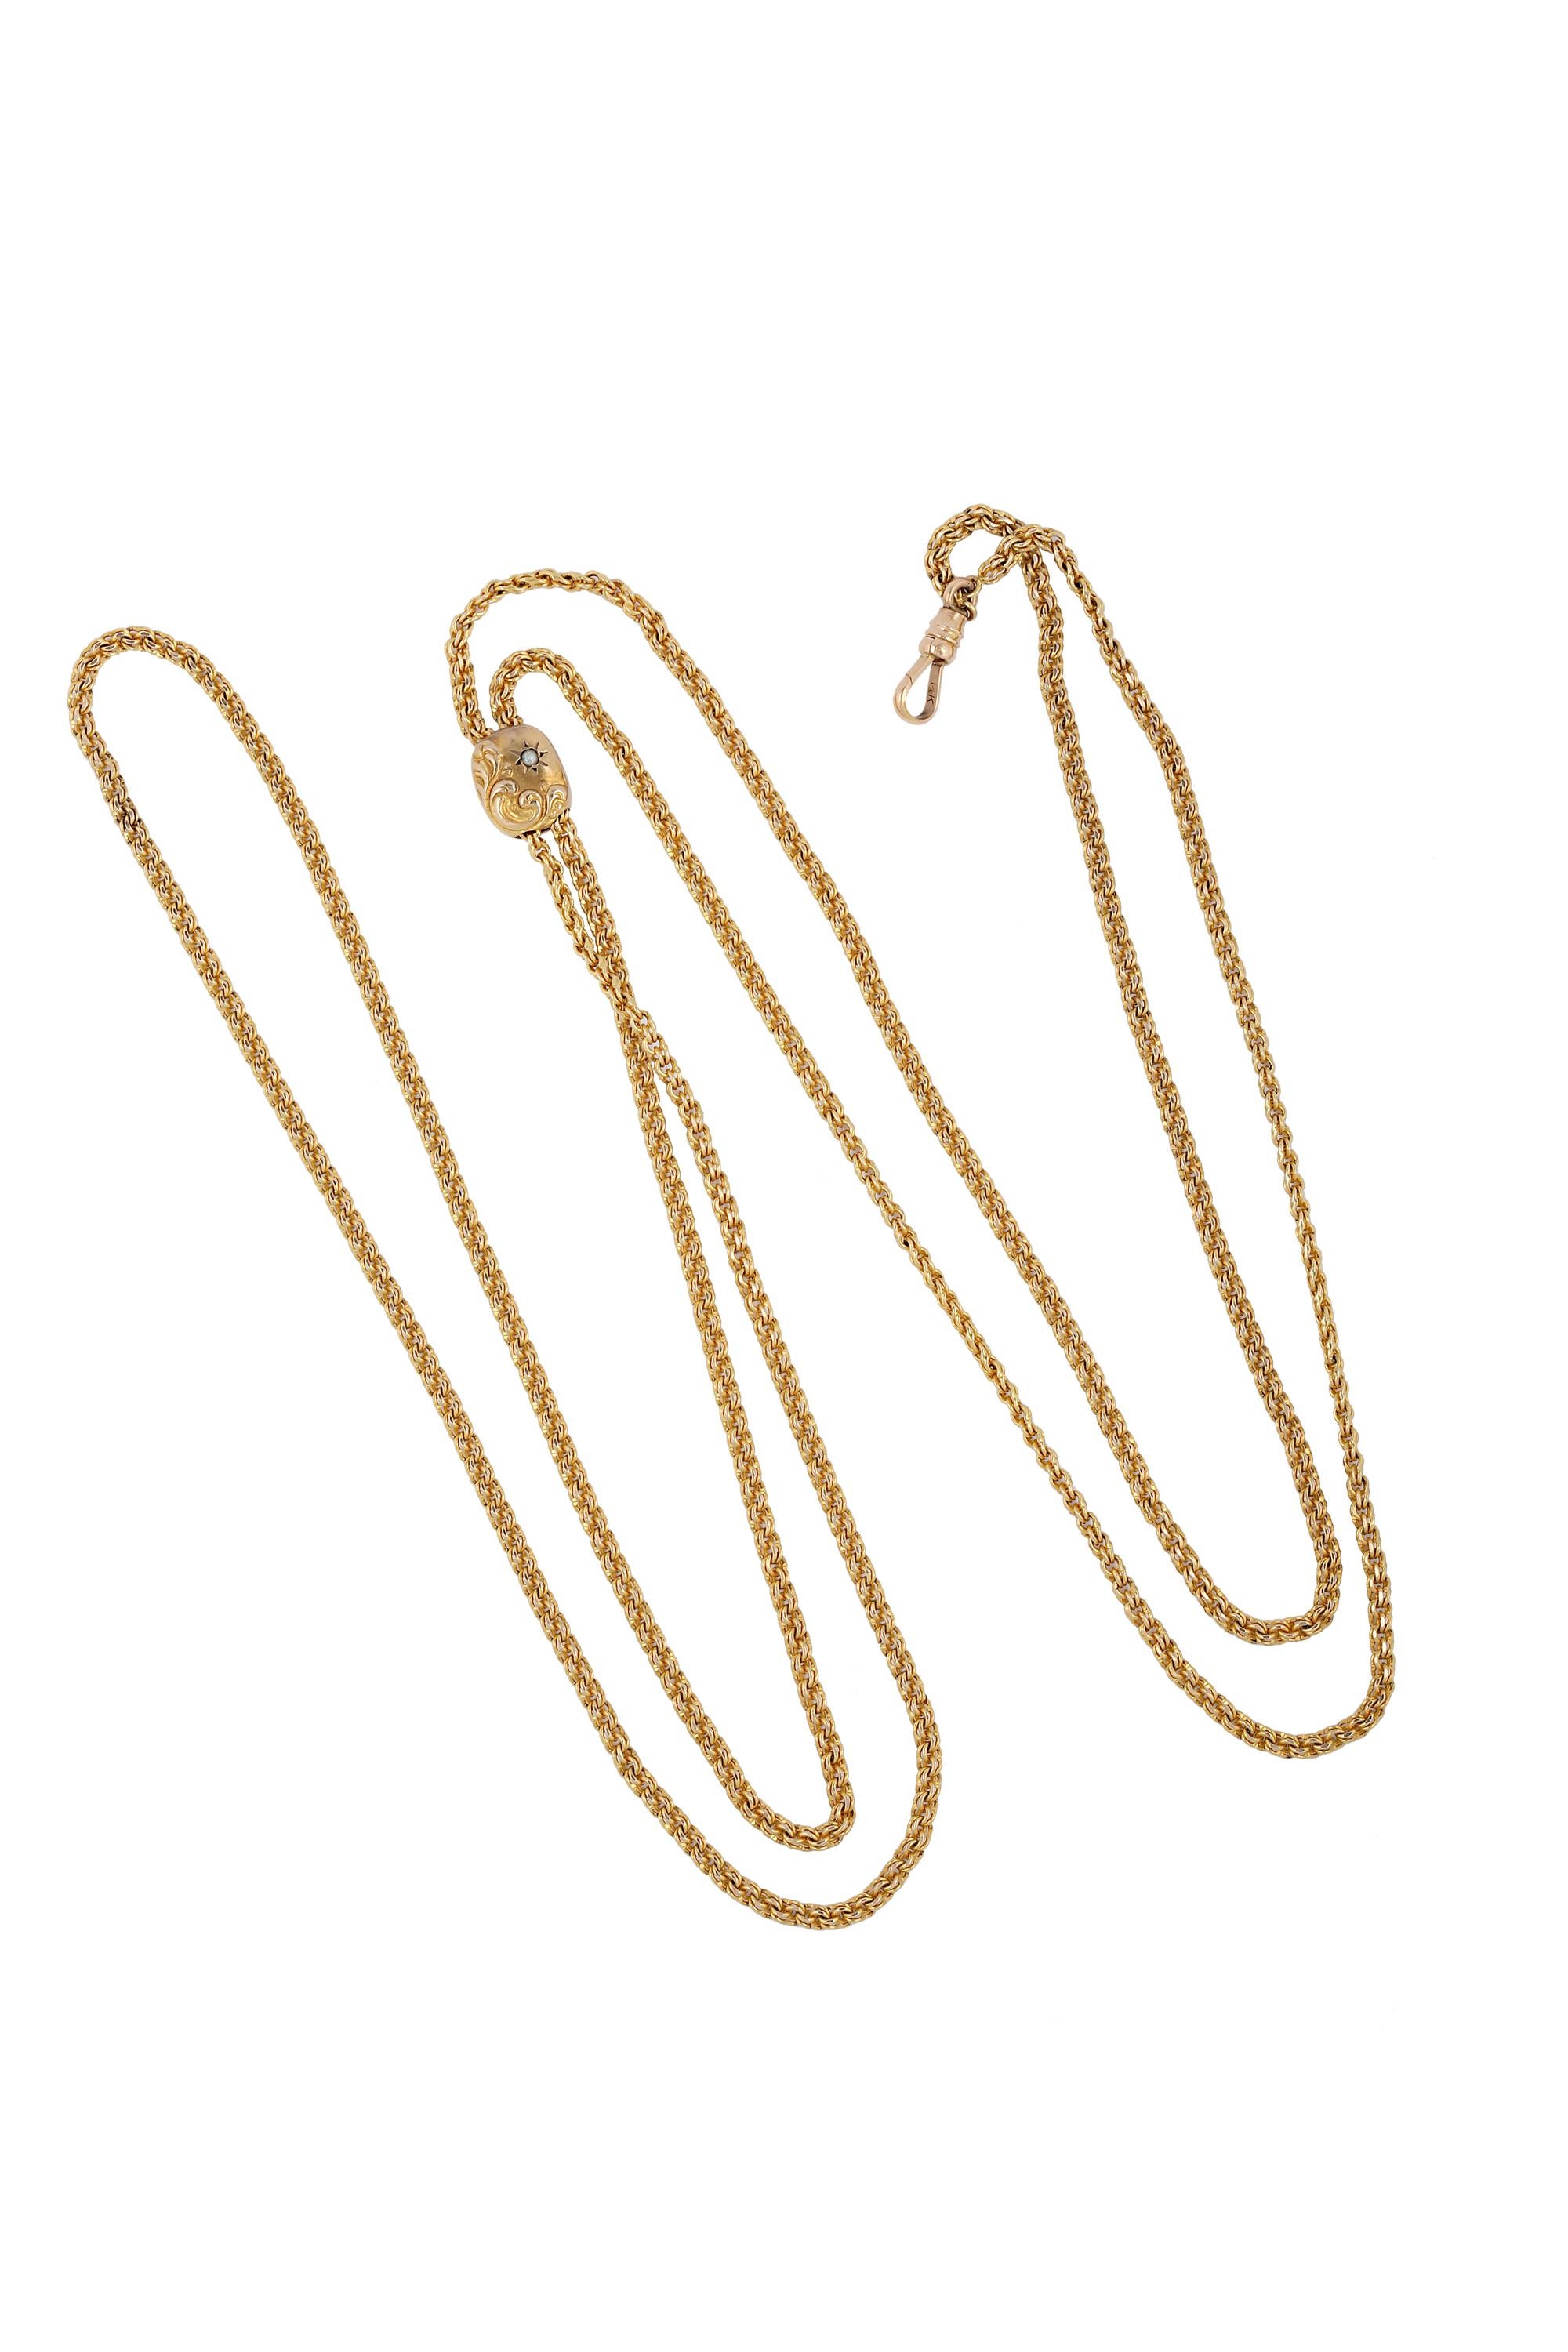 Diese feine antike 14K Gelbgold-Halskette aus dem 19. Jahrhundert hat eine 50-Zoll-Kette aus doppelten Rolo-Gliedern mit einem Schieber, der entlang der Kette platziert werden kann, um eine beliebige Länge zu schaffen, mit der Sie sich wohl fühlen.